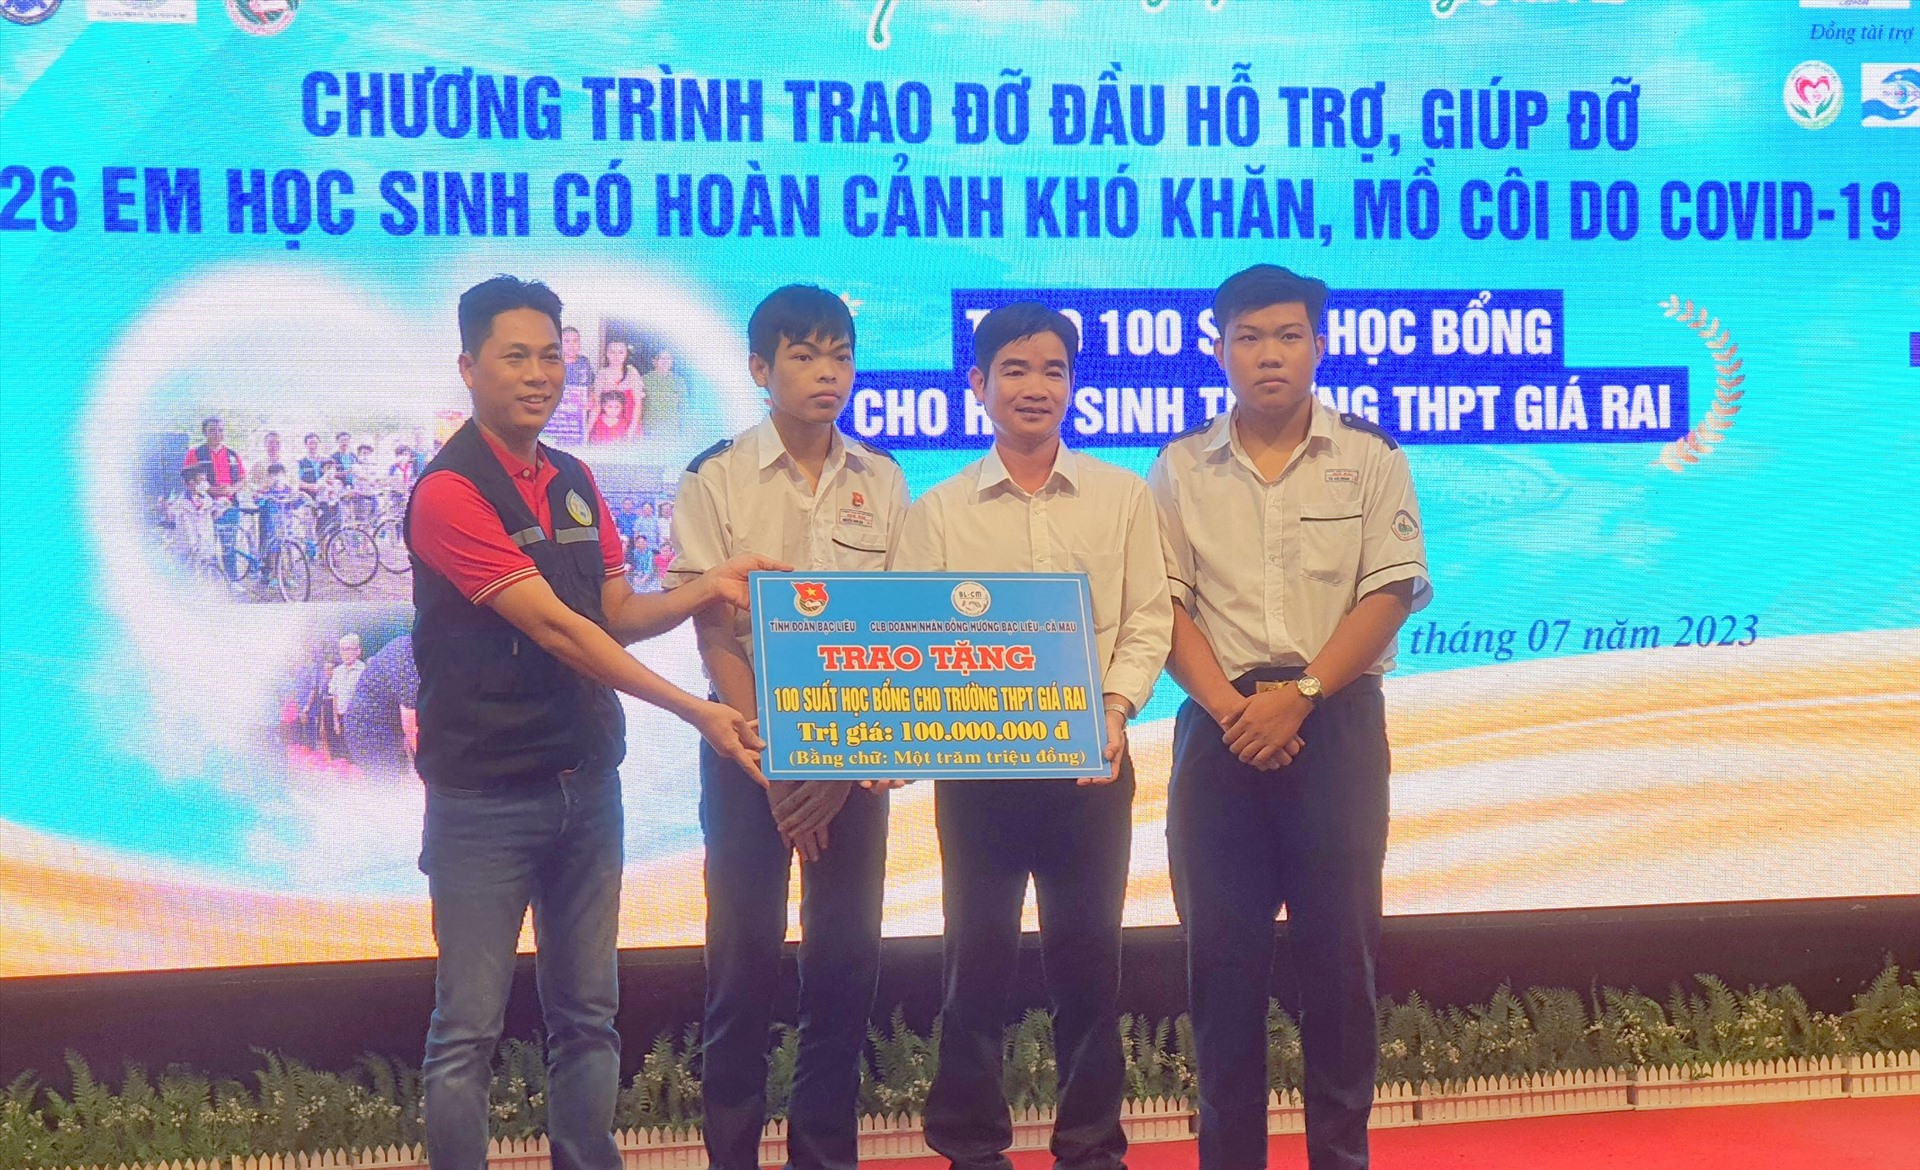 100 học sinh tại Trường THPT Giá Rai, tỉnh Bạc Liêu có hoàn cảnh khó khăn cũng được nhận học bổng mỗi suất 1 triệu đồng. Ảnnh: Nhật Hồ